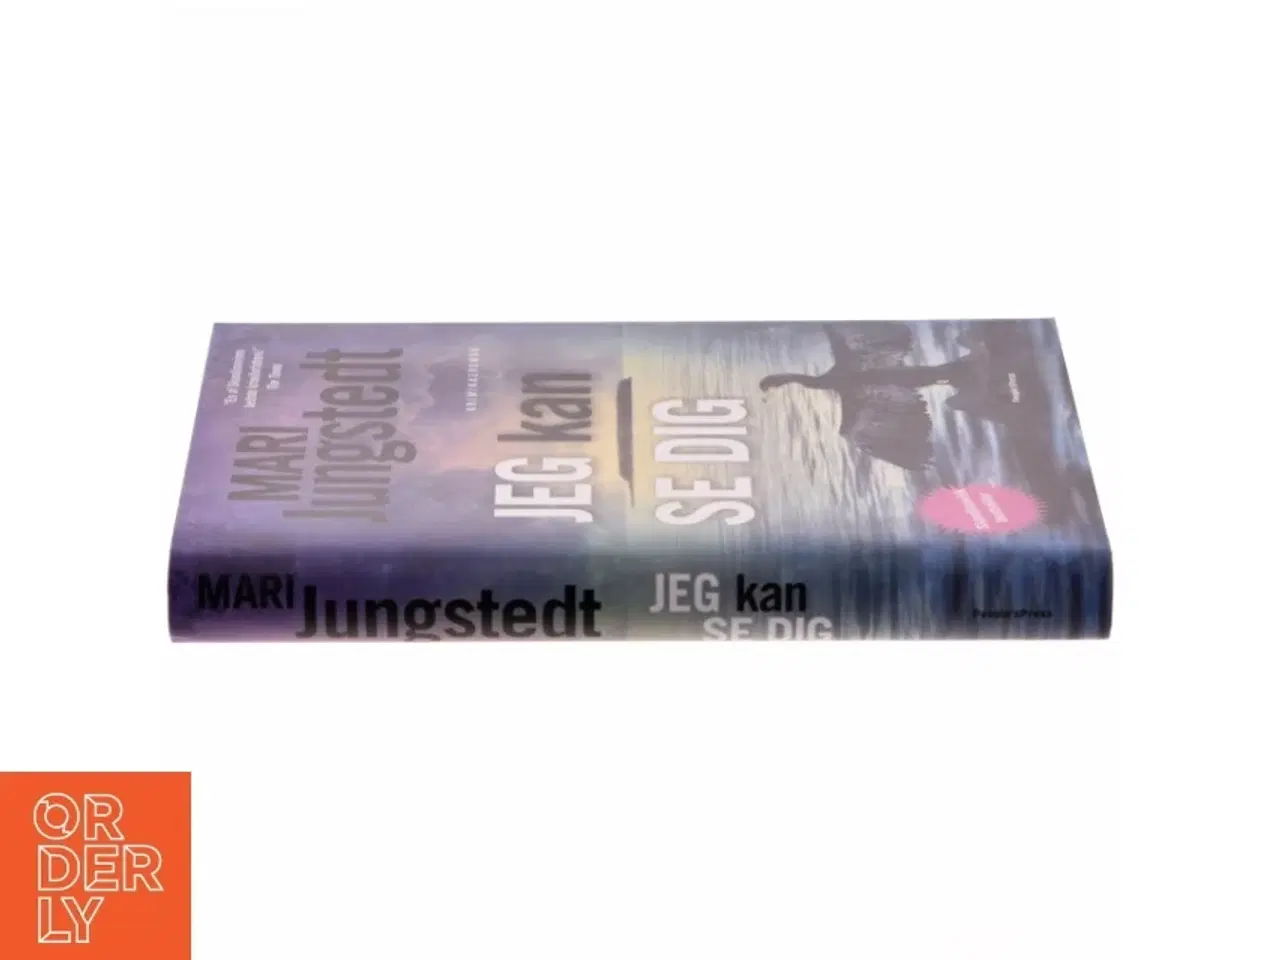 Billede 2 - 'Jeg kan se dig: kriminalroman' af Mari Jungstedt (bog)